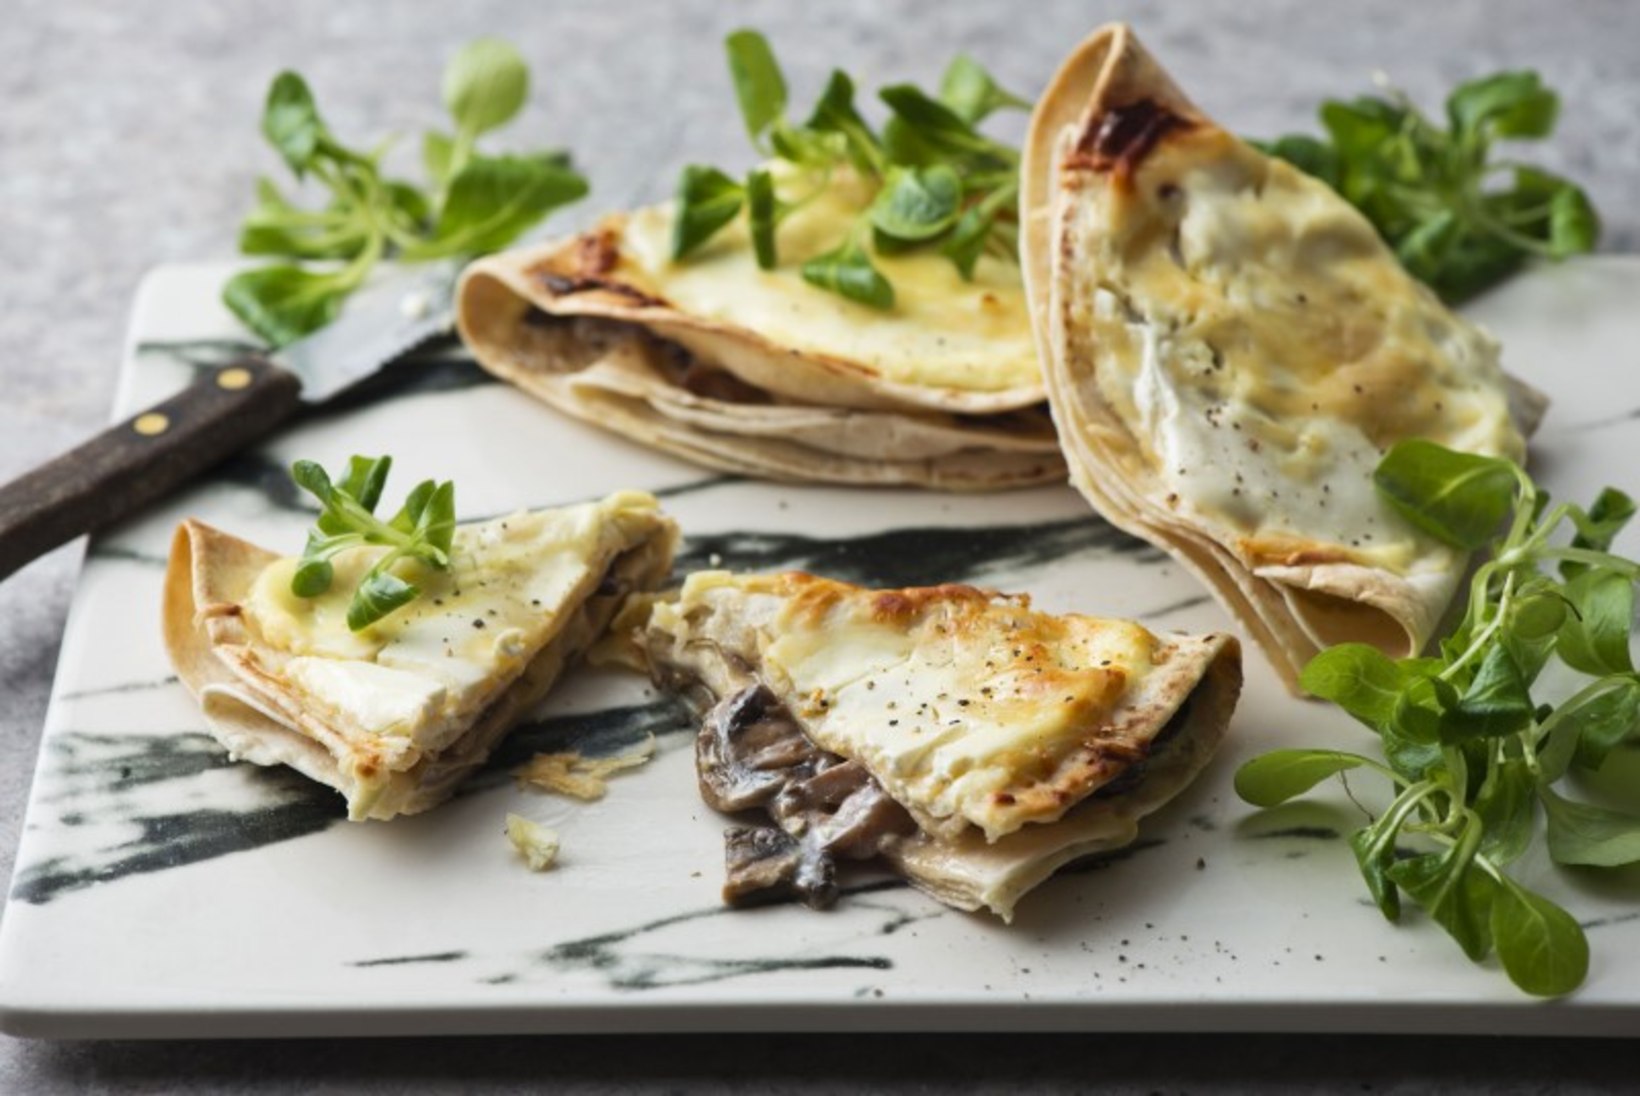 LAHEDA LAUPÄEVA RETSEPT | Kuumad seene- juustu tortillad  